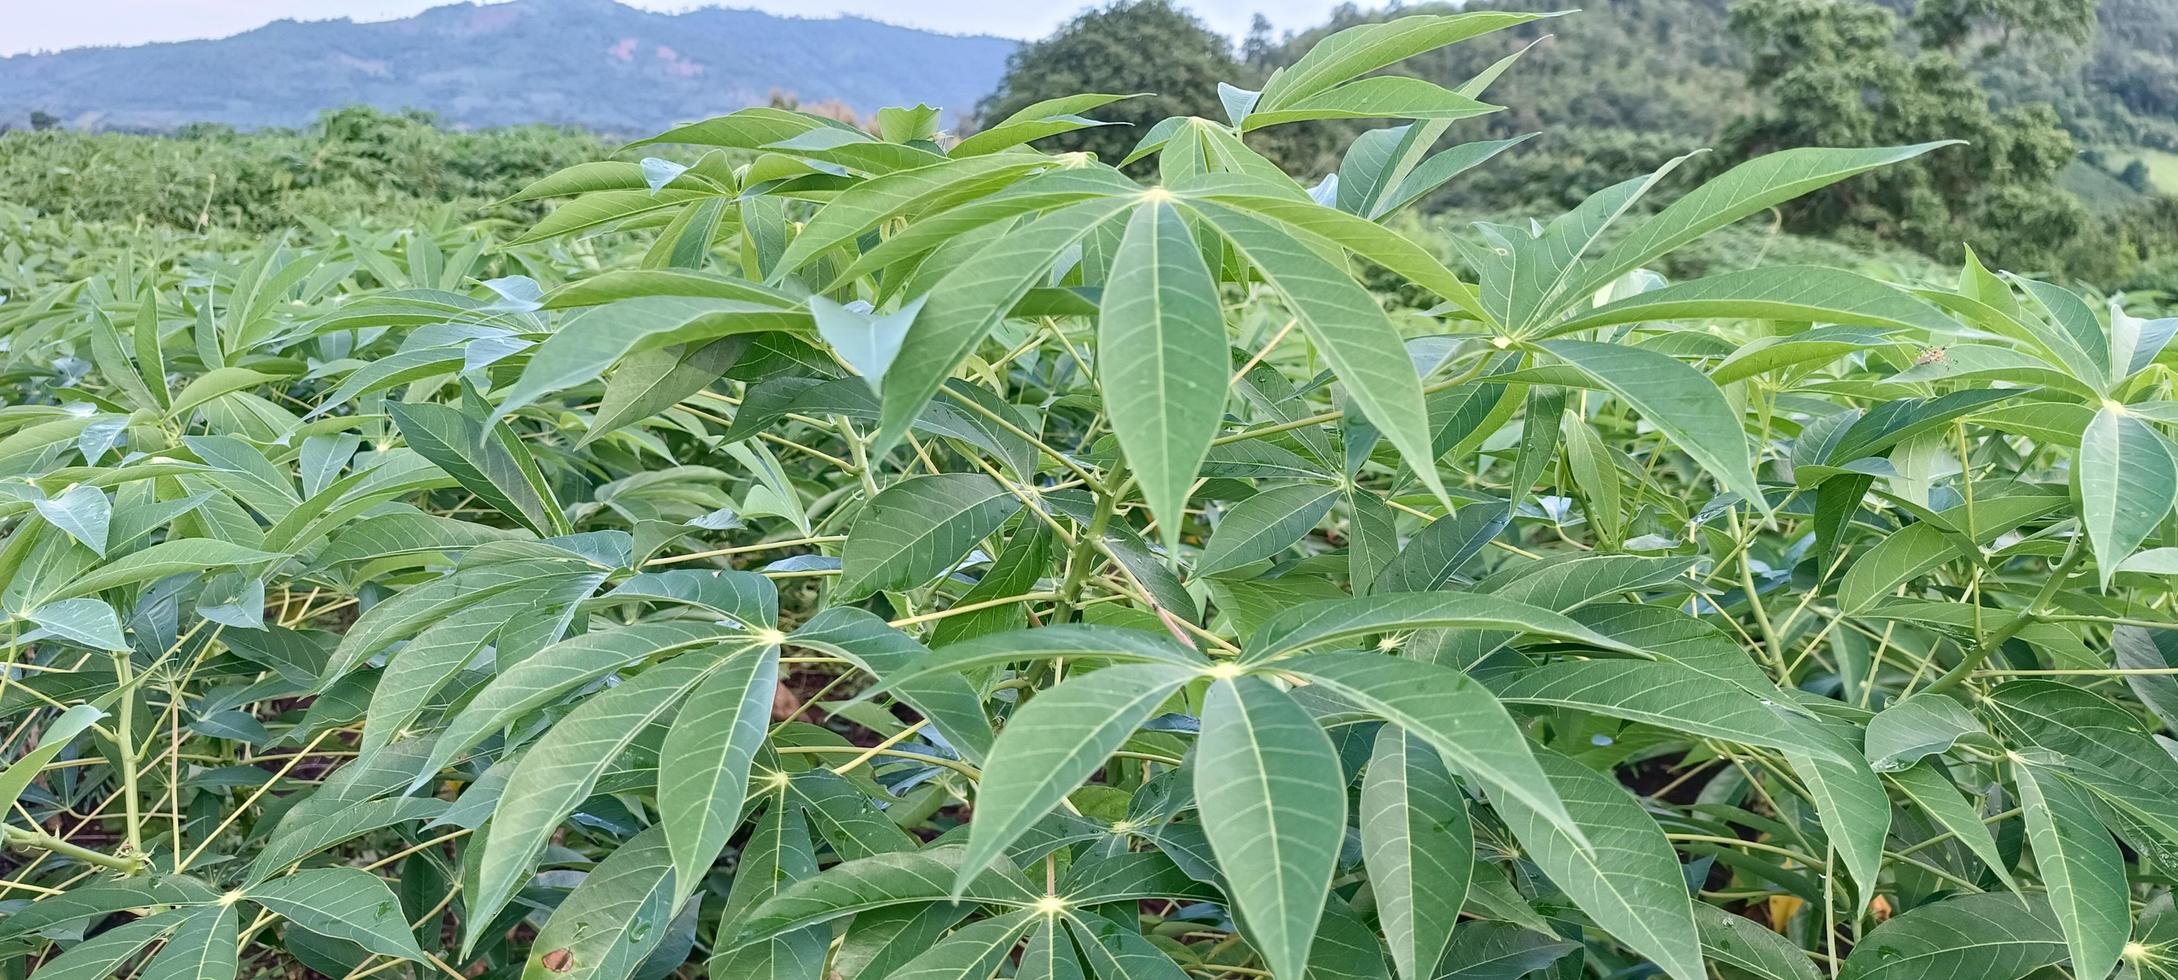 plantação de mandioca. natureza verde folhas jardim foto